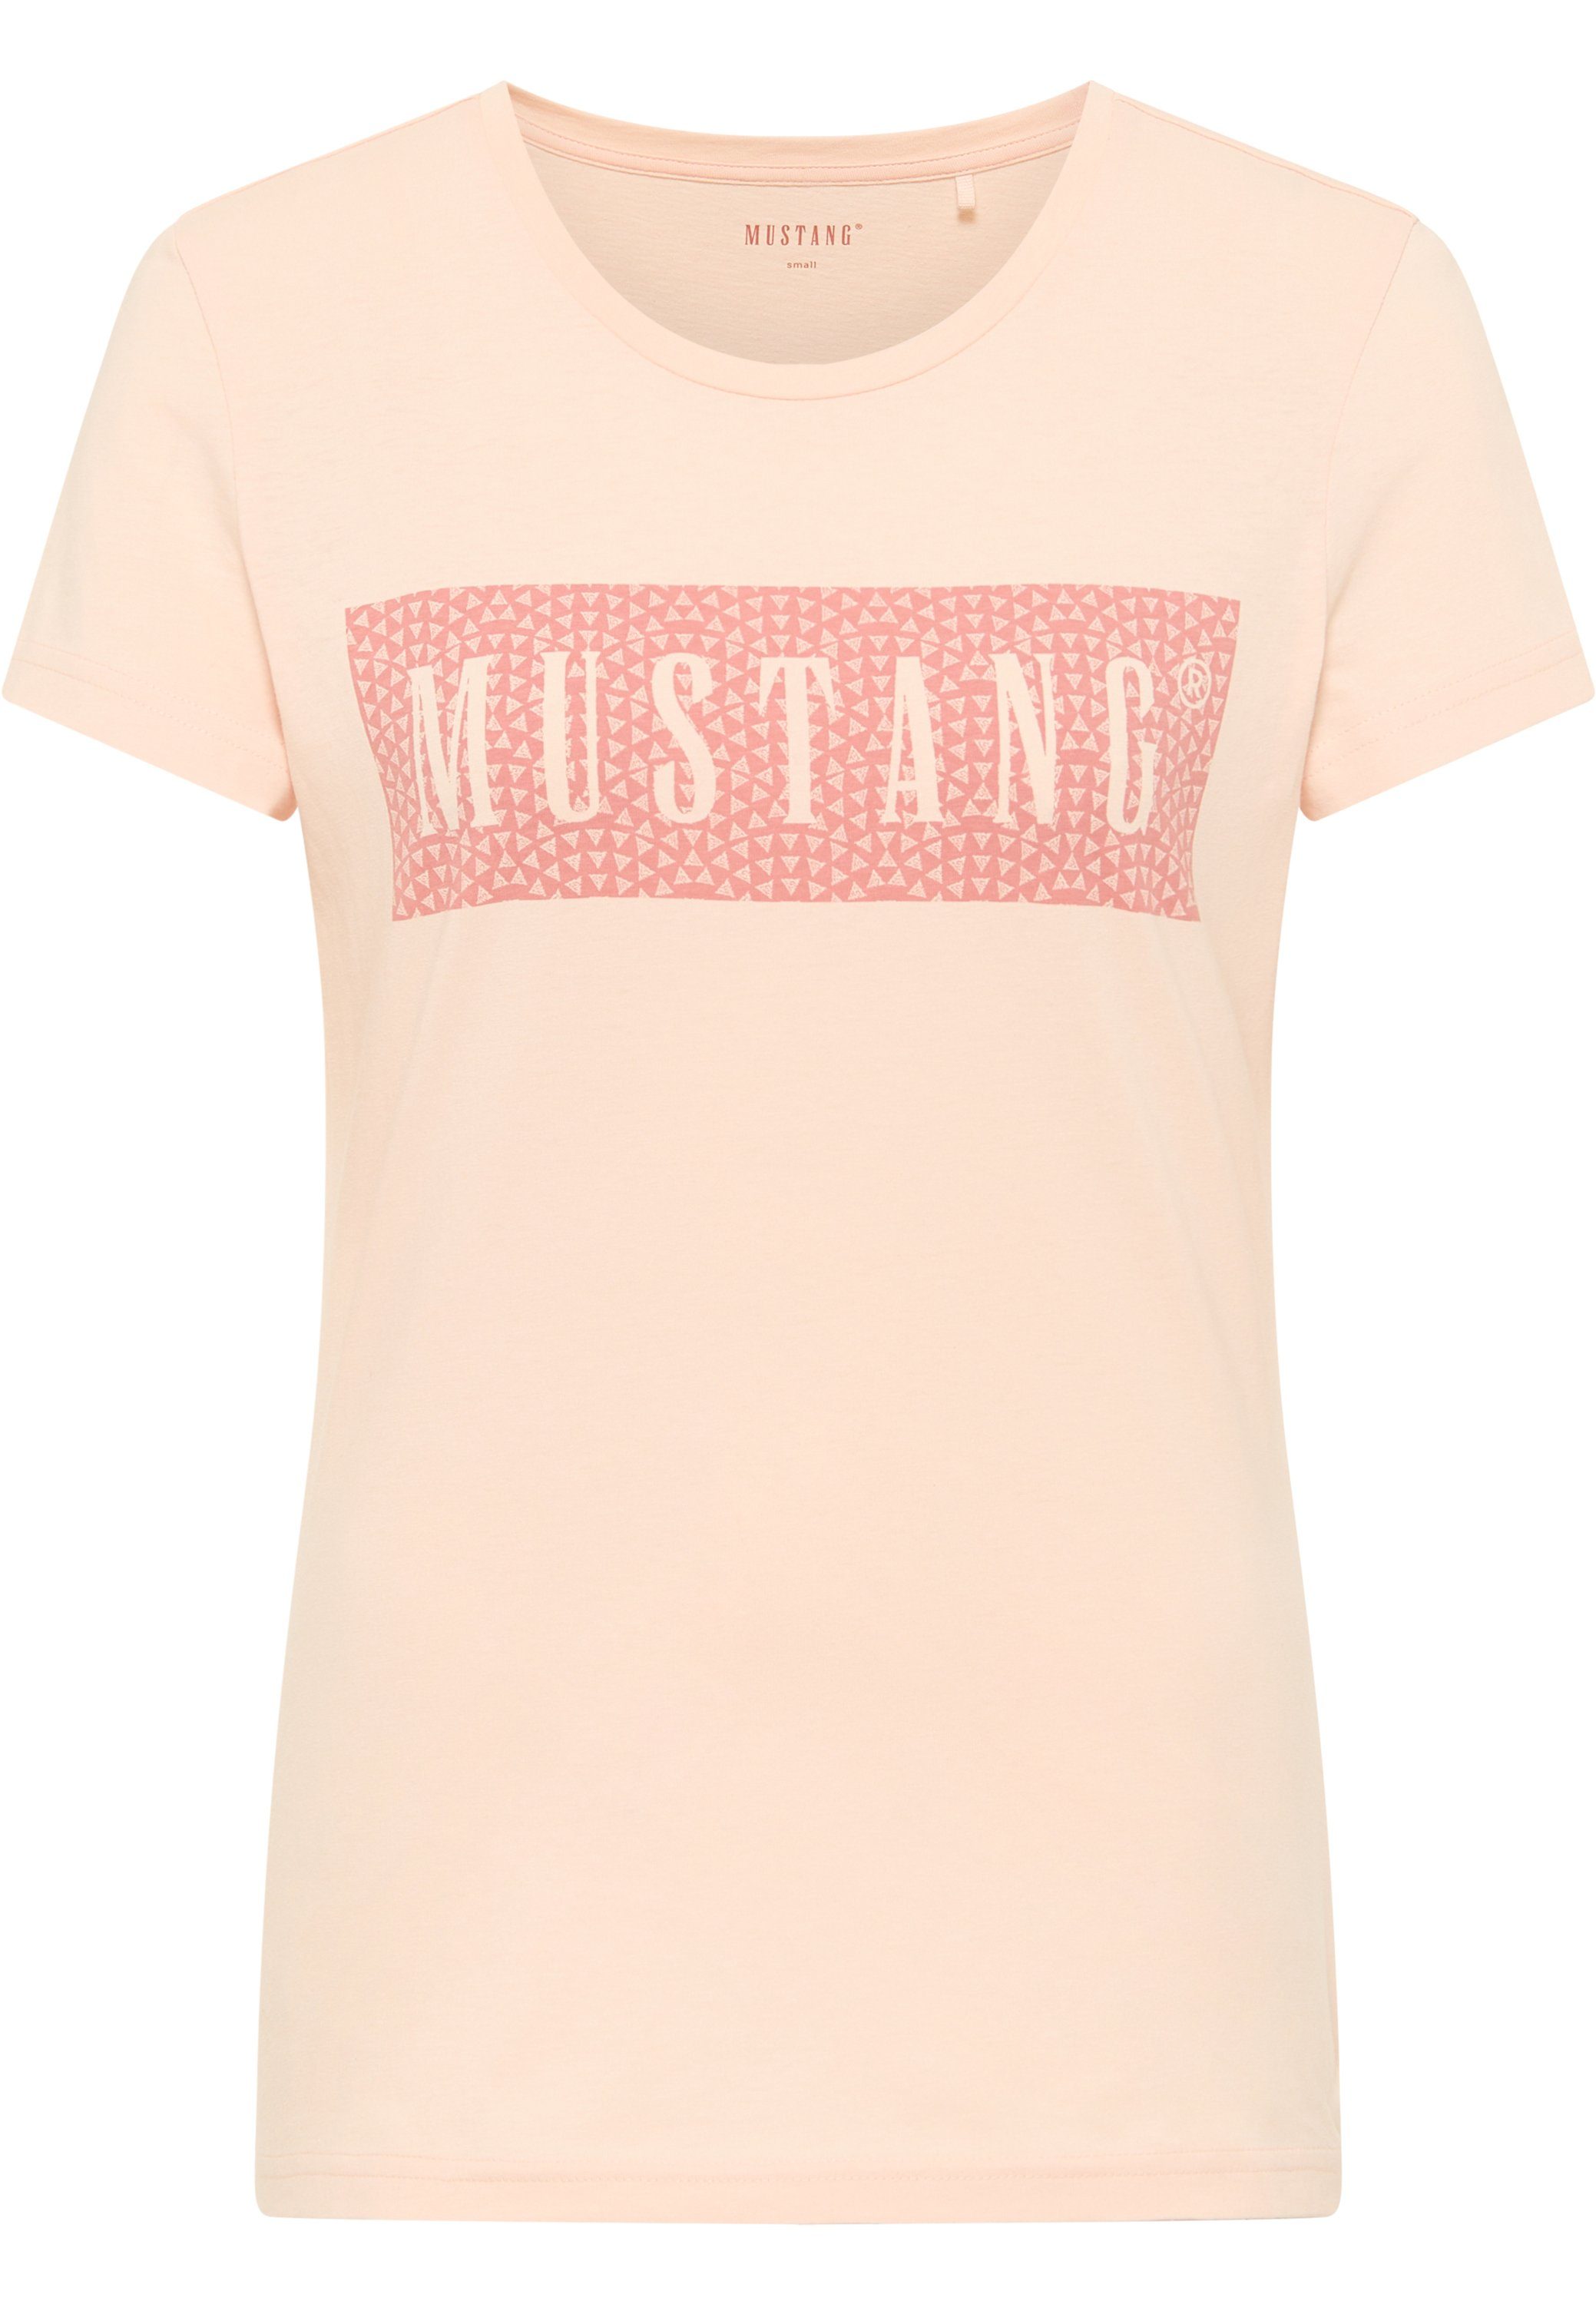 Kurzarmshirt T-Shirt Mustang MUSTANG hellrosa Print-Shirt